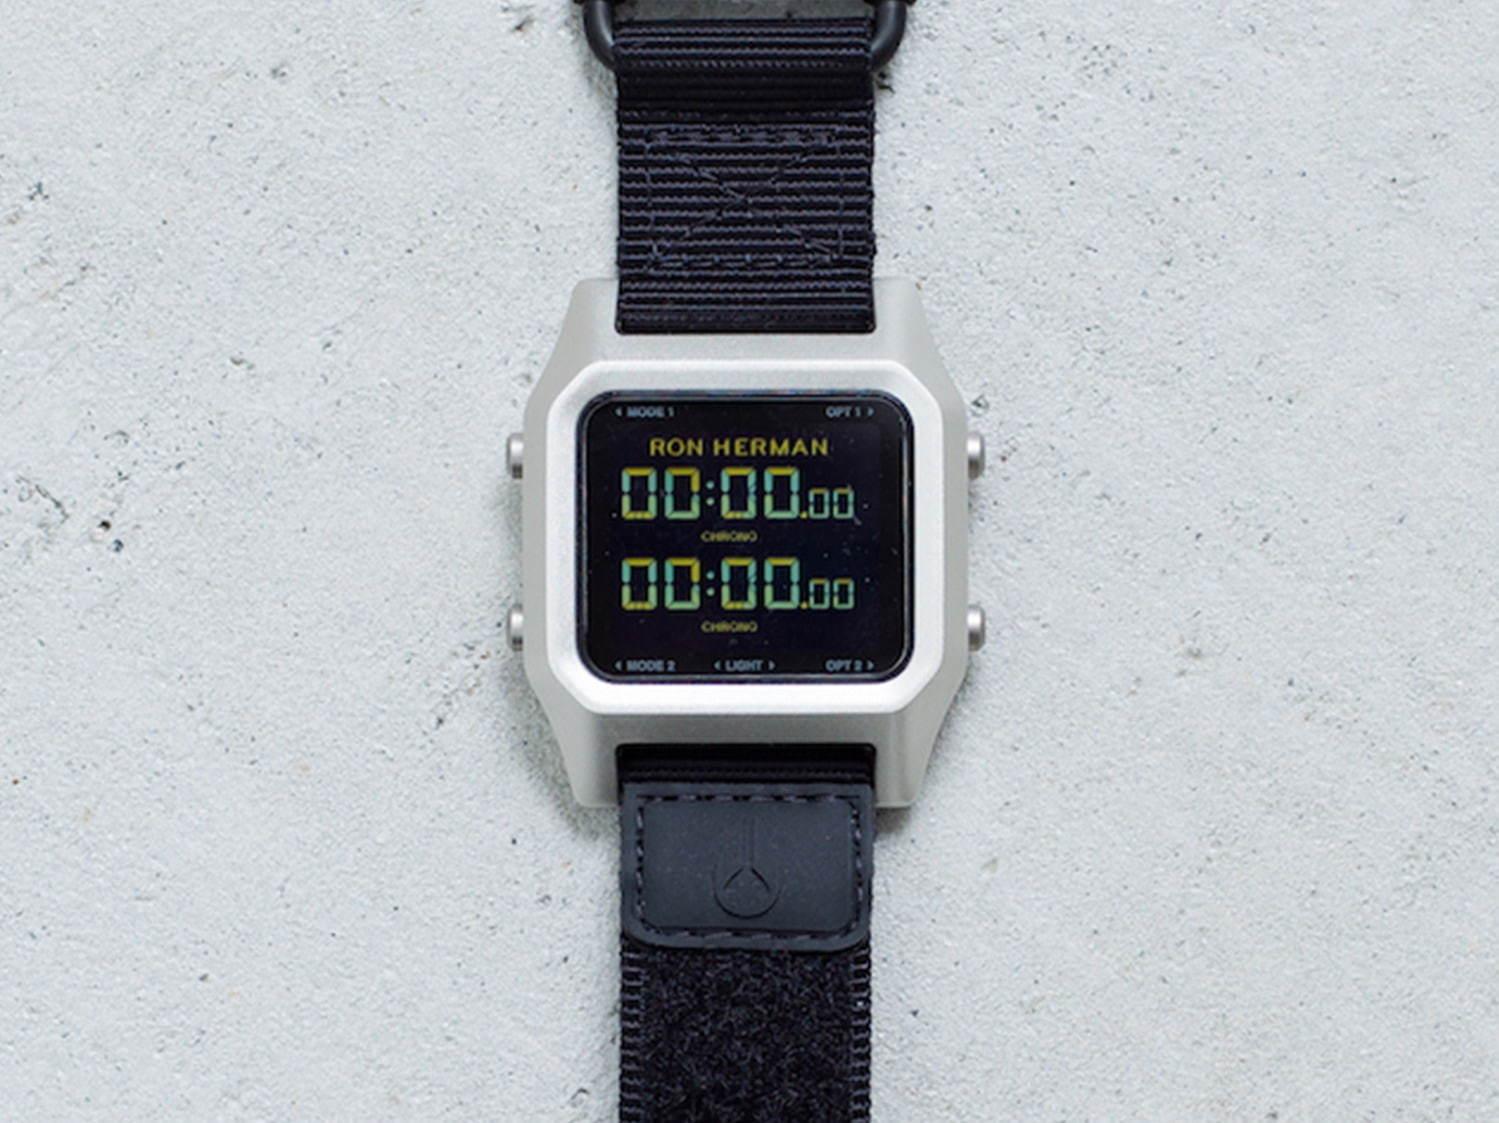 ニクソン×RHC ロンハーマンの新作腕時計、シルバーの超薄型ケース&カスタマイズ可能な液晶画面 コピー